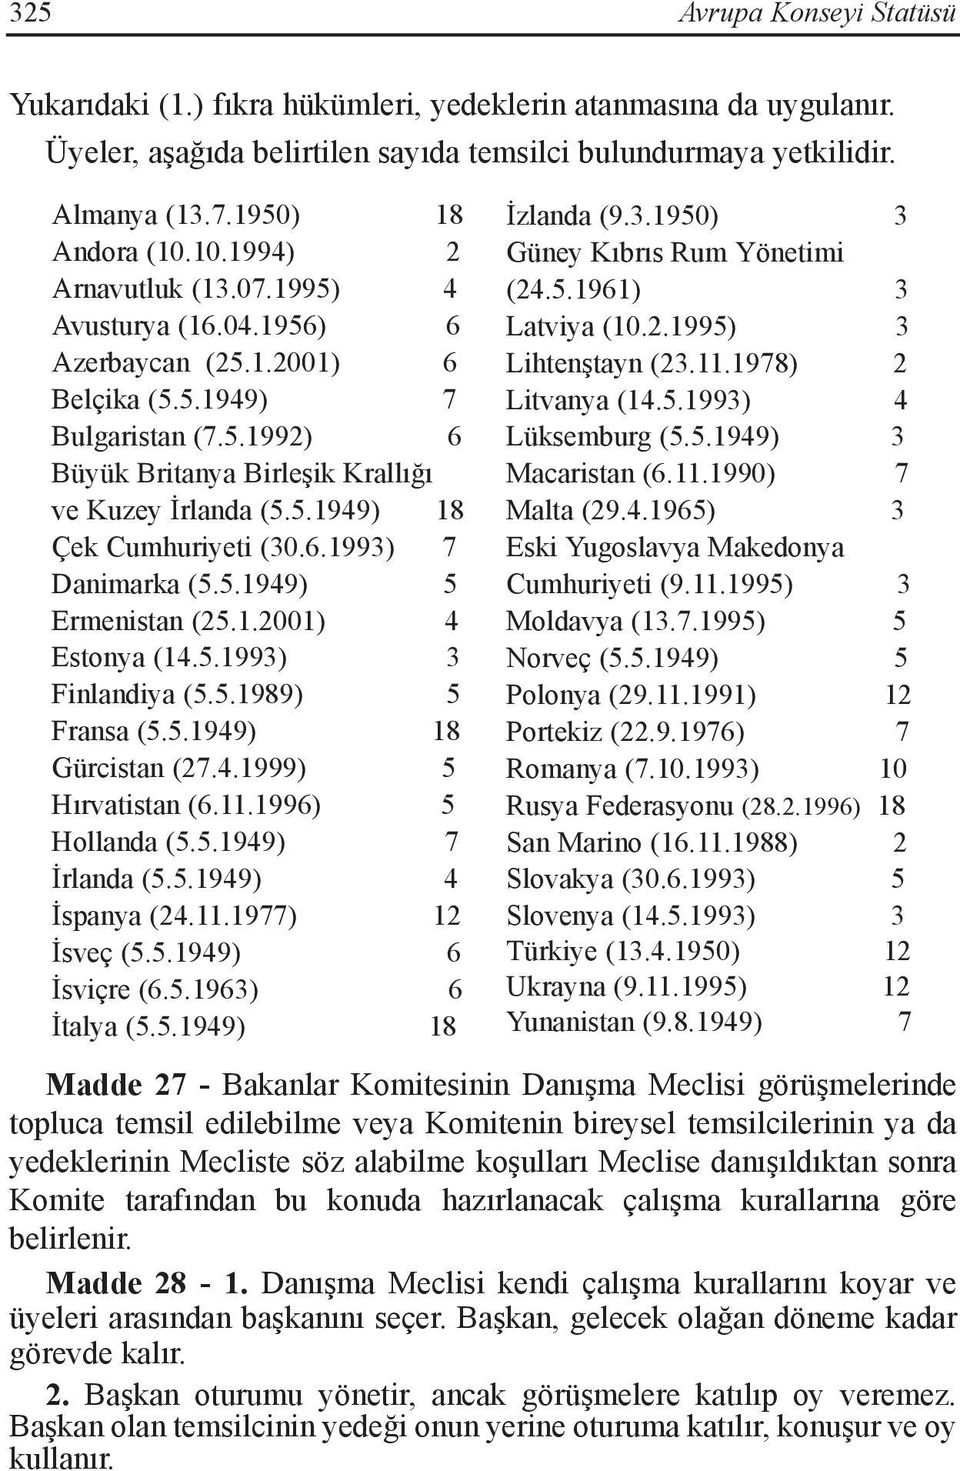 5.1949) 5 Ermenistan (25.1.2001) 4 Estonya (14.5.1993) 3 Finlandiya (5.5.1989) 5 Fransa (5.5.1949) 18 Gürcistan (27.4.1999) 5 Hırvatistan (6.11.1996) 5 Hollanda (5.5.1949) 7 İrlanda (5.5.1949) 4 İspanya (24.